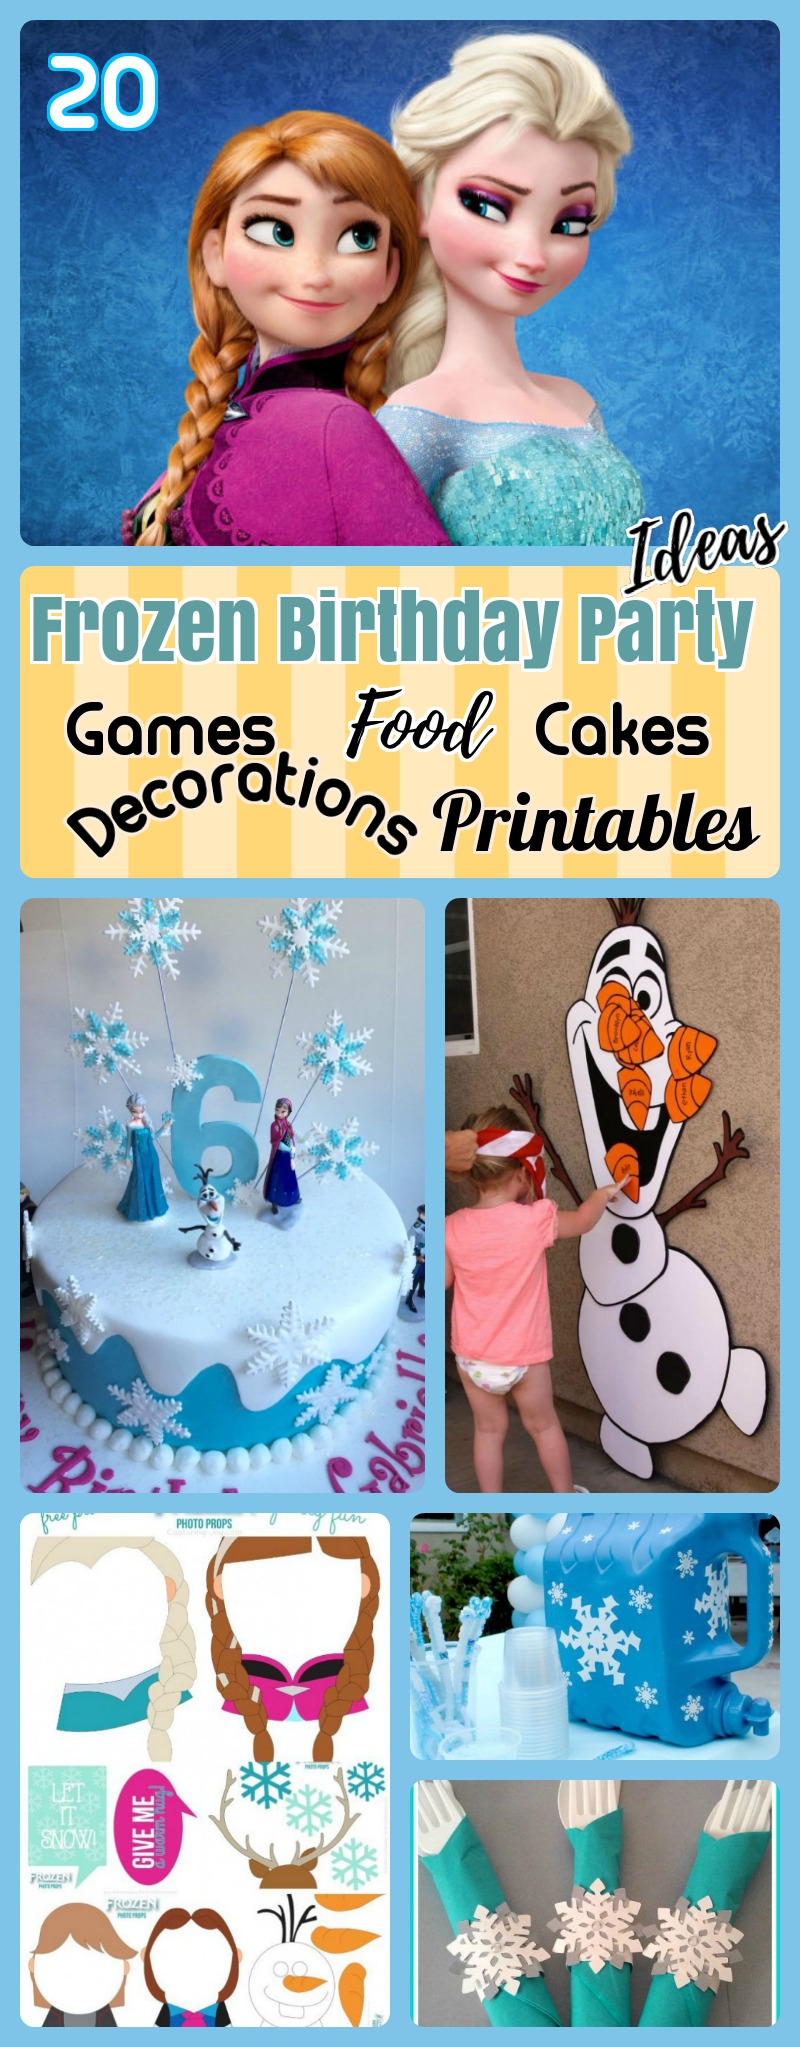 Frozen Party ideas